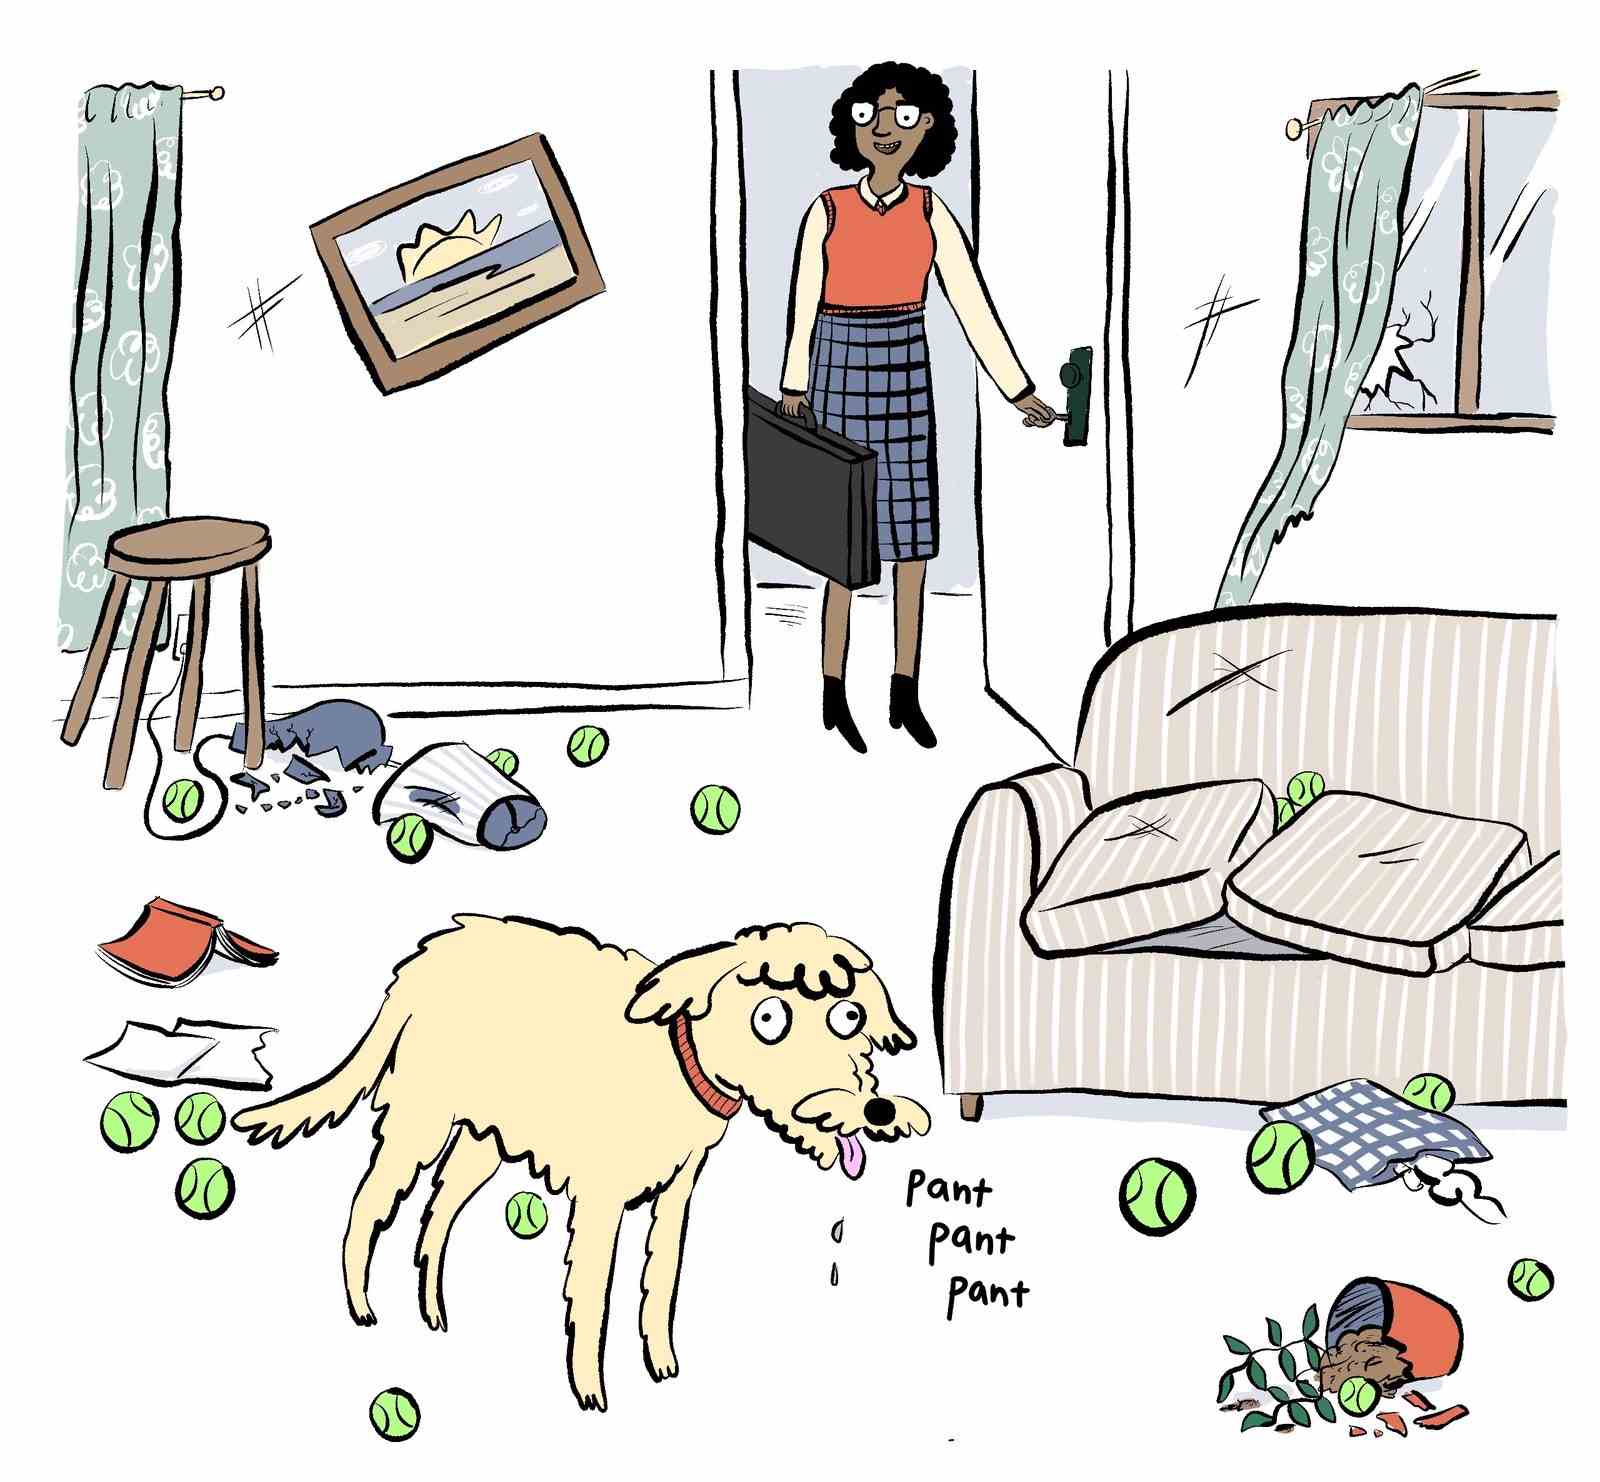 Der Besitzer öffnet die Haustür zur Wohnung, die mit Tennisbällen und ihrem hechelnden Hund bedeckt ist.